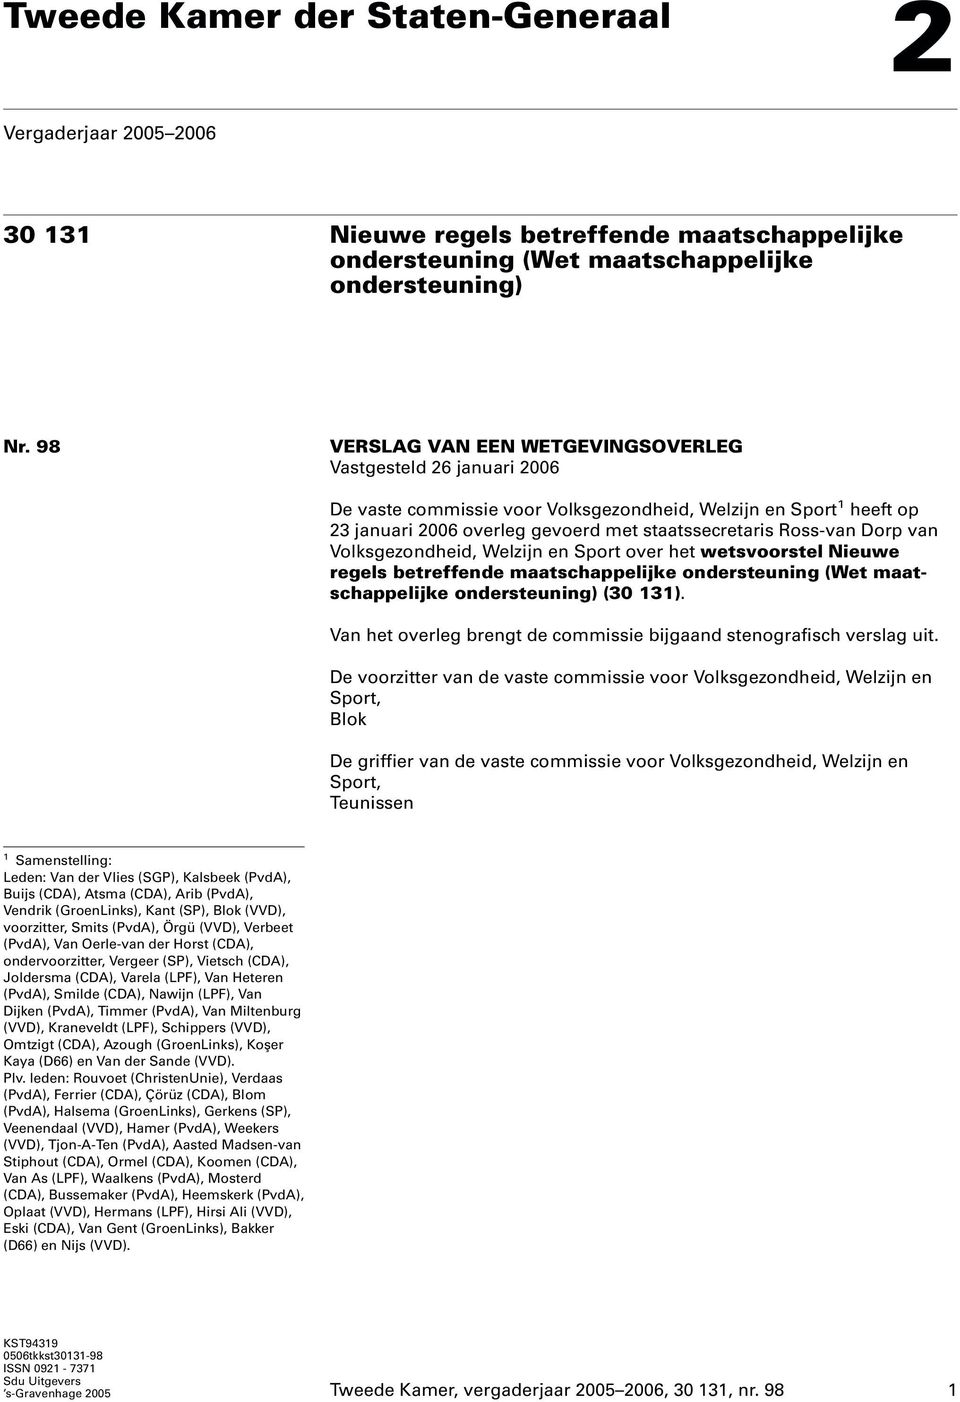 Dorp van Volksgezondheid, Welzijn en Sport over het wetsvoorstel Nieuwe regels betreffende maatschappelijke ondersteuning (Wet maatschappelijke ondersteuning) (30 131).